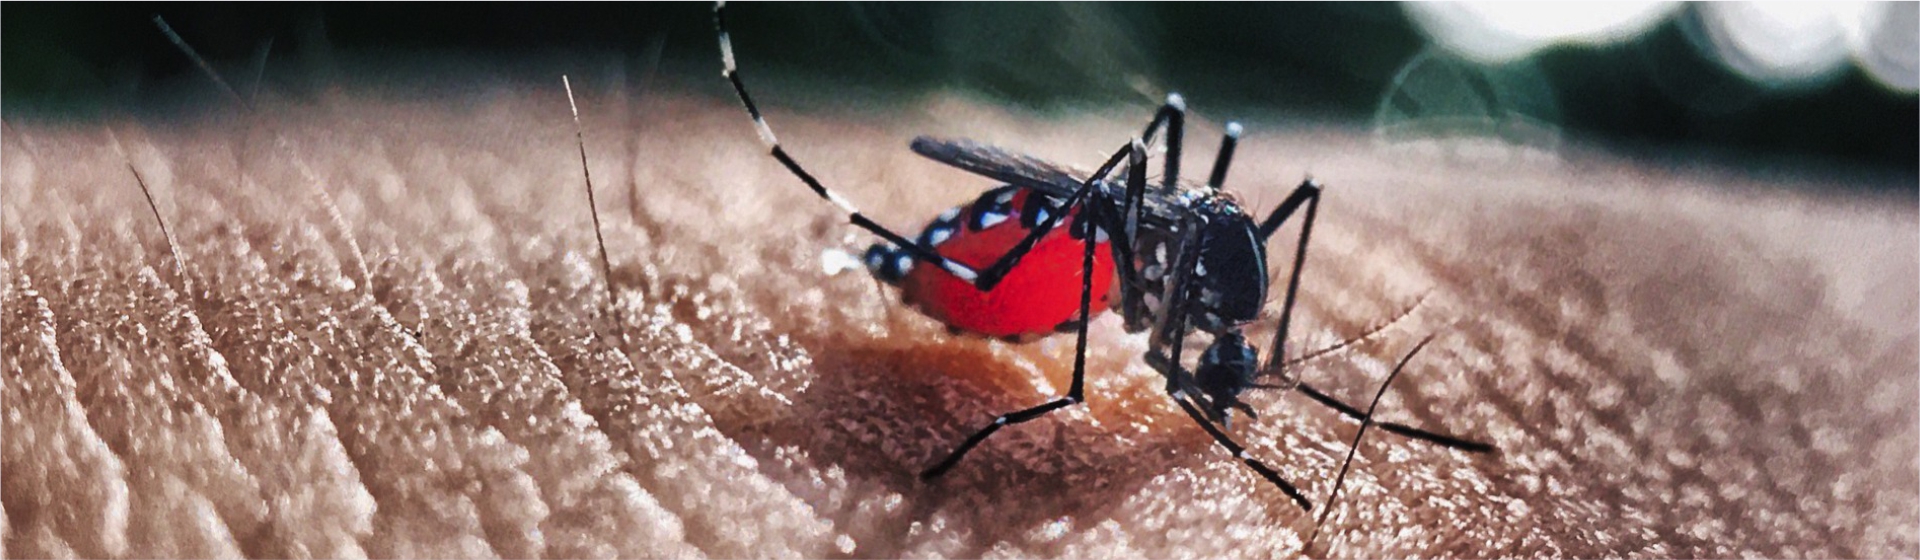 mosquito y dengue en el día del agua - Cider | Uniandes